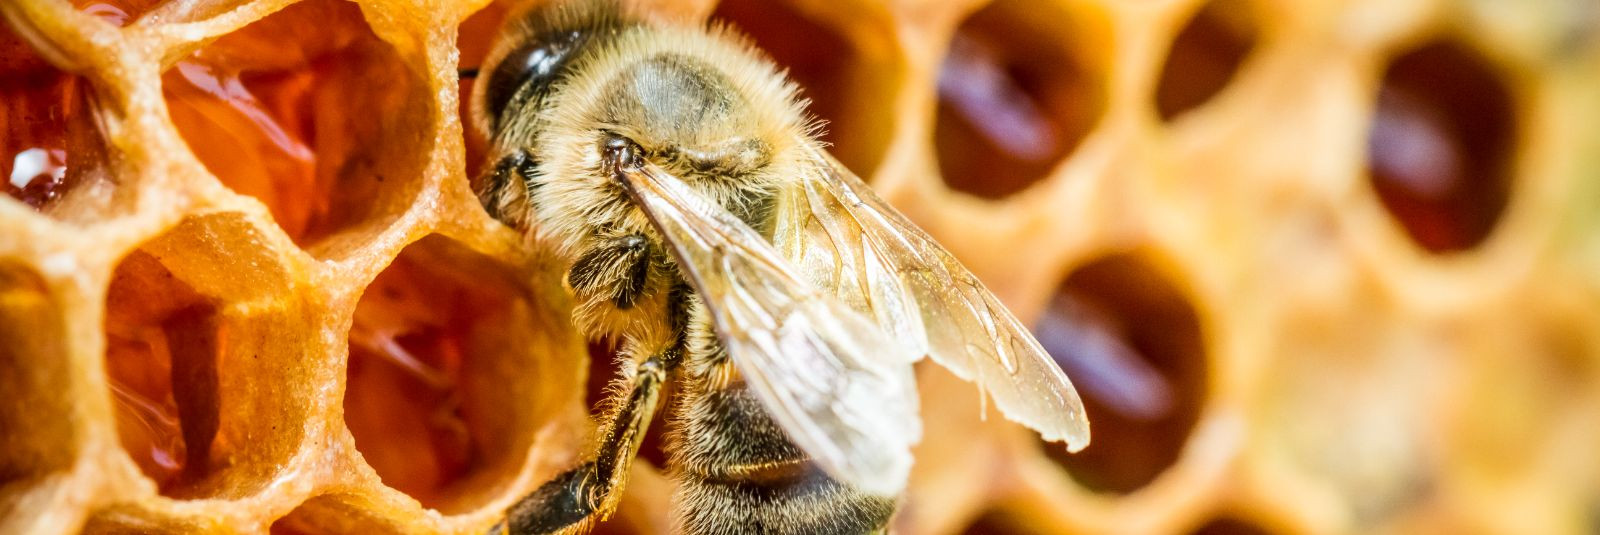 Mesilased on looduse imetegijad, kelle tegevus mõjutab meie ökosüsteemi mitmel viisil. Nende tolmeldamine aitab viljakust ja mitmekesisust säilitada ning nende 